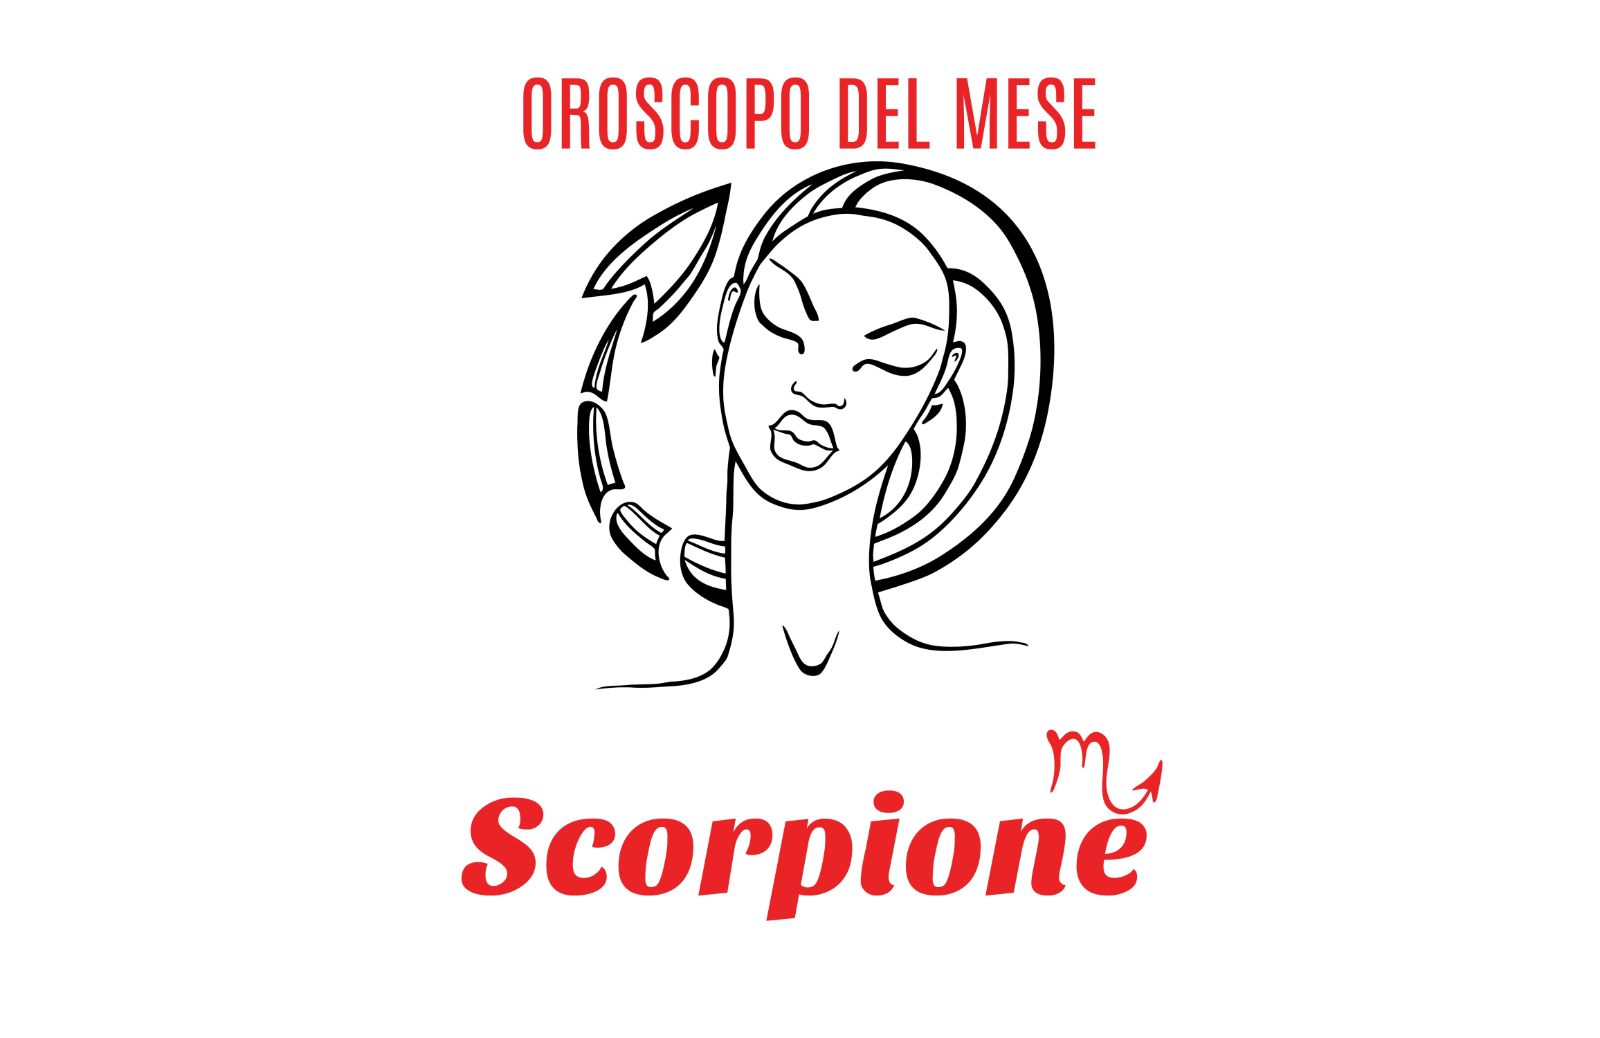 Oroscopo del mese: Scorpione - aprile 2019